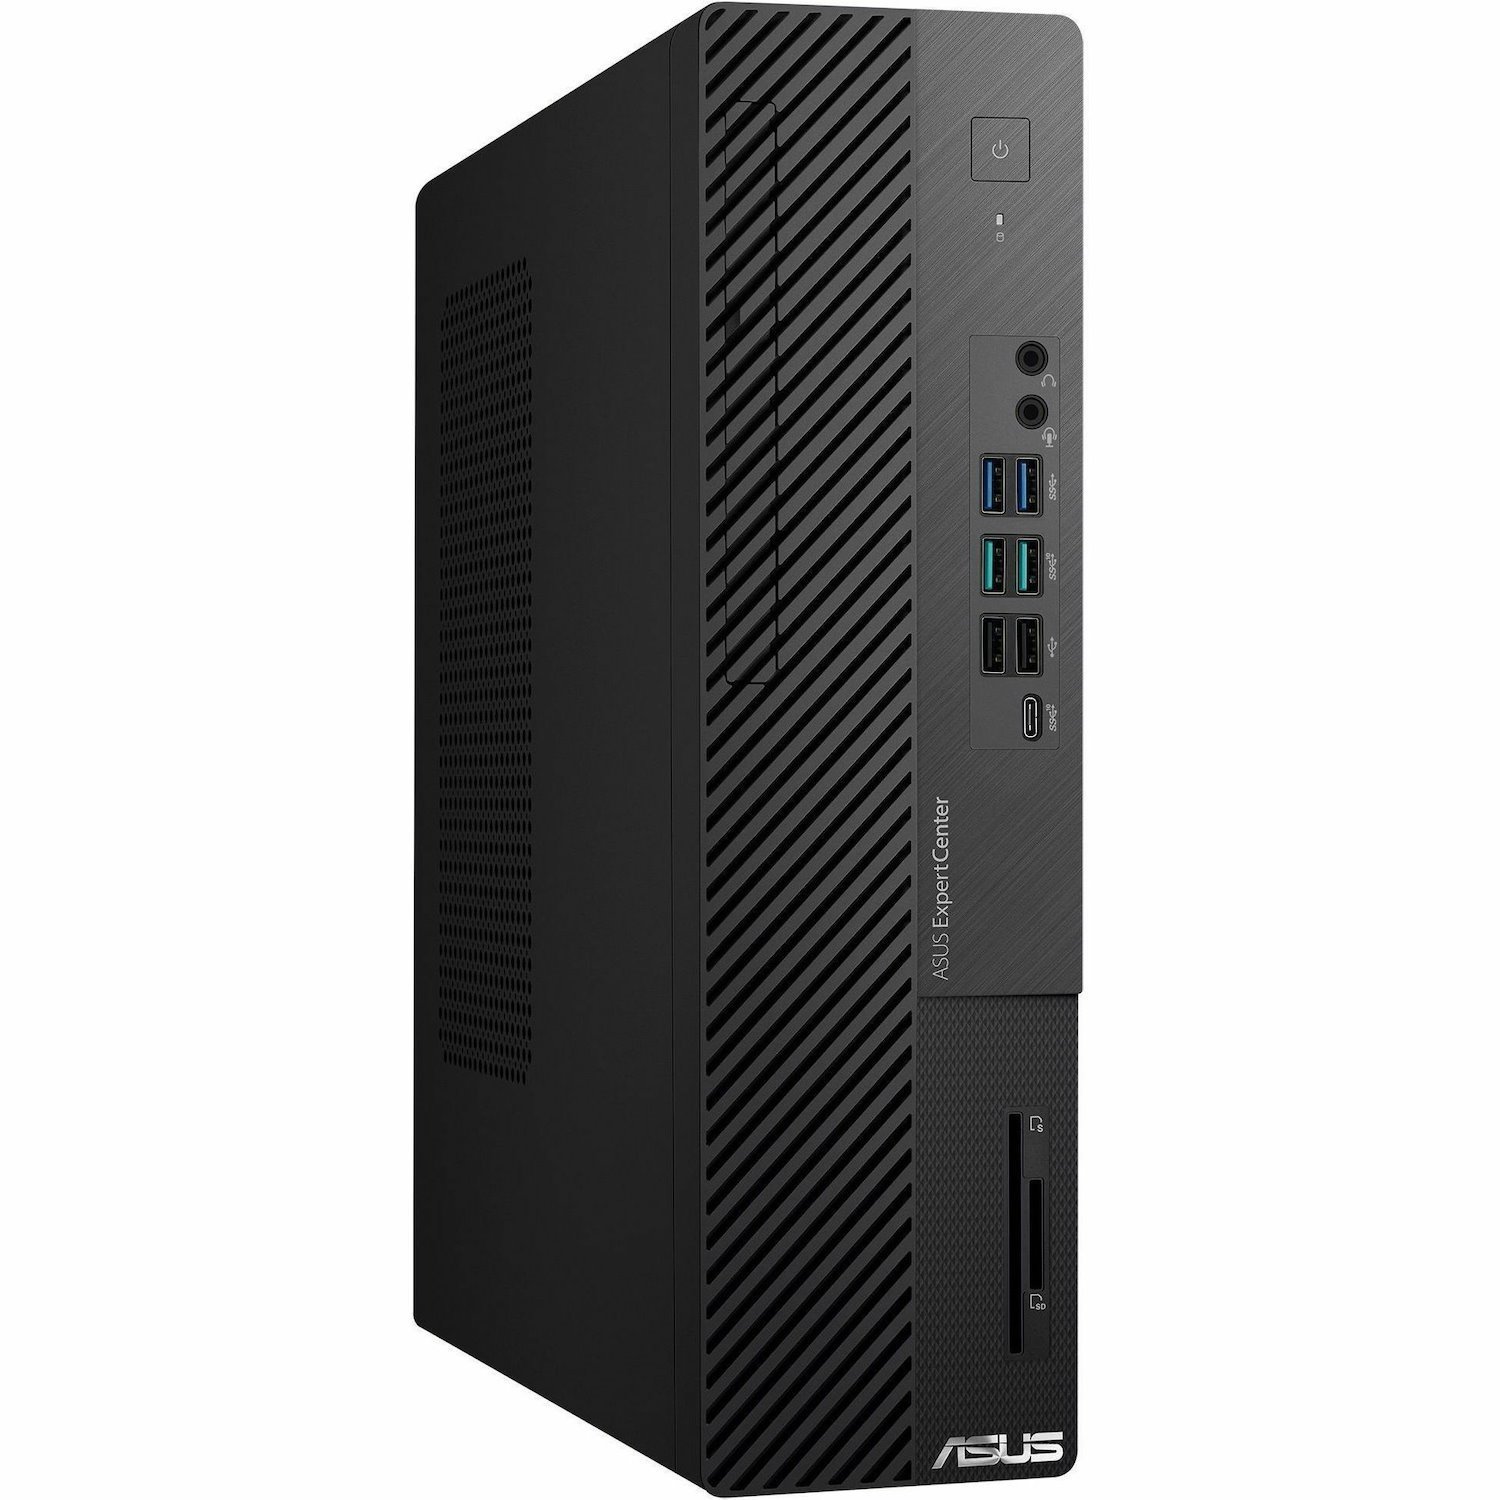 Asus ExpertCenter D7 D700SE-XB704 Desktop Computer - Intel Core i7 13th Gen i7-13700 - 16 GB - 512 GB SSD - Small Form Factor - Black